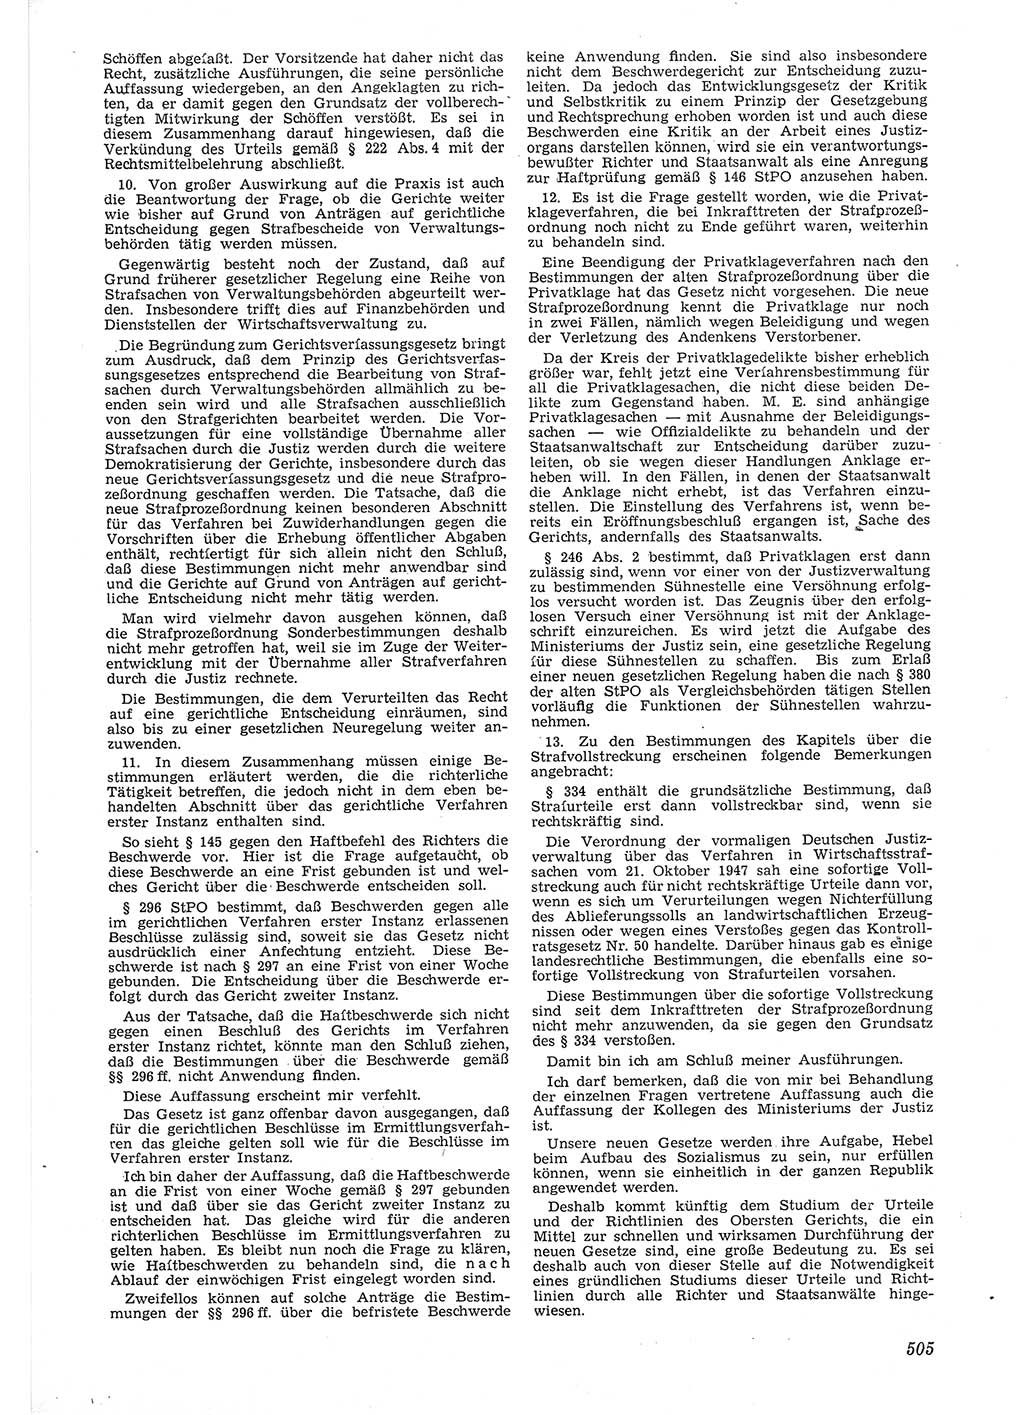 Neue Justiz (NJ), Zeitschrift für Recht und Rechtswissenschaft [Deutsche Demokratische Republik (DDR)], 6. Jahrgang 1952, Seite 505 (NJ DDR 1952, S. 505)